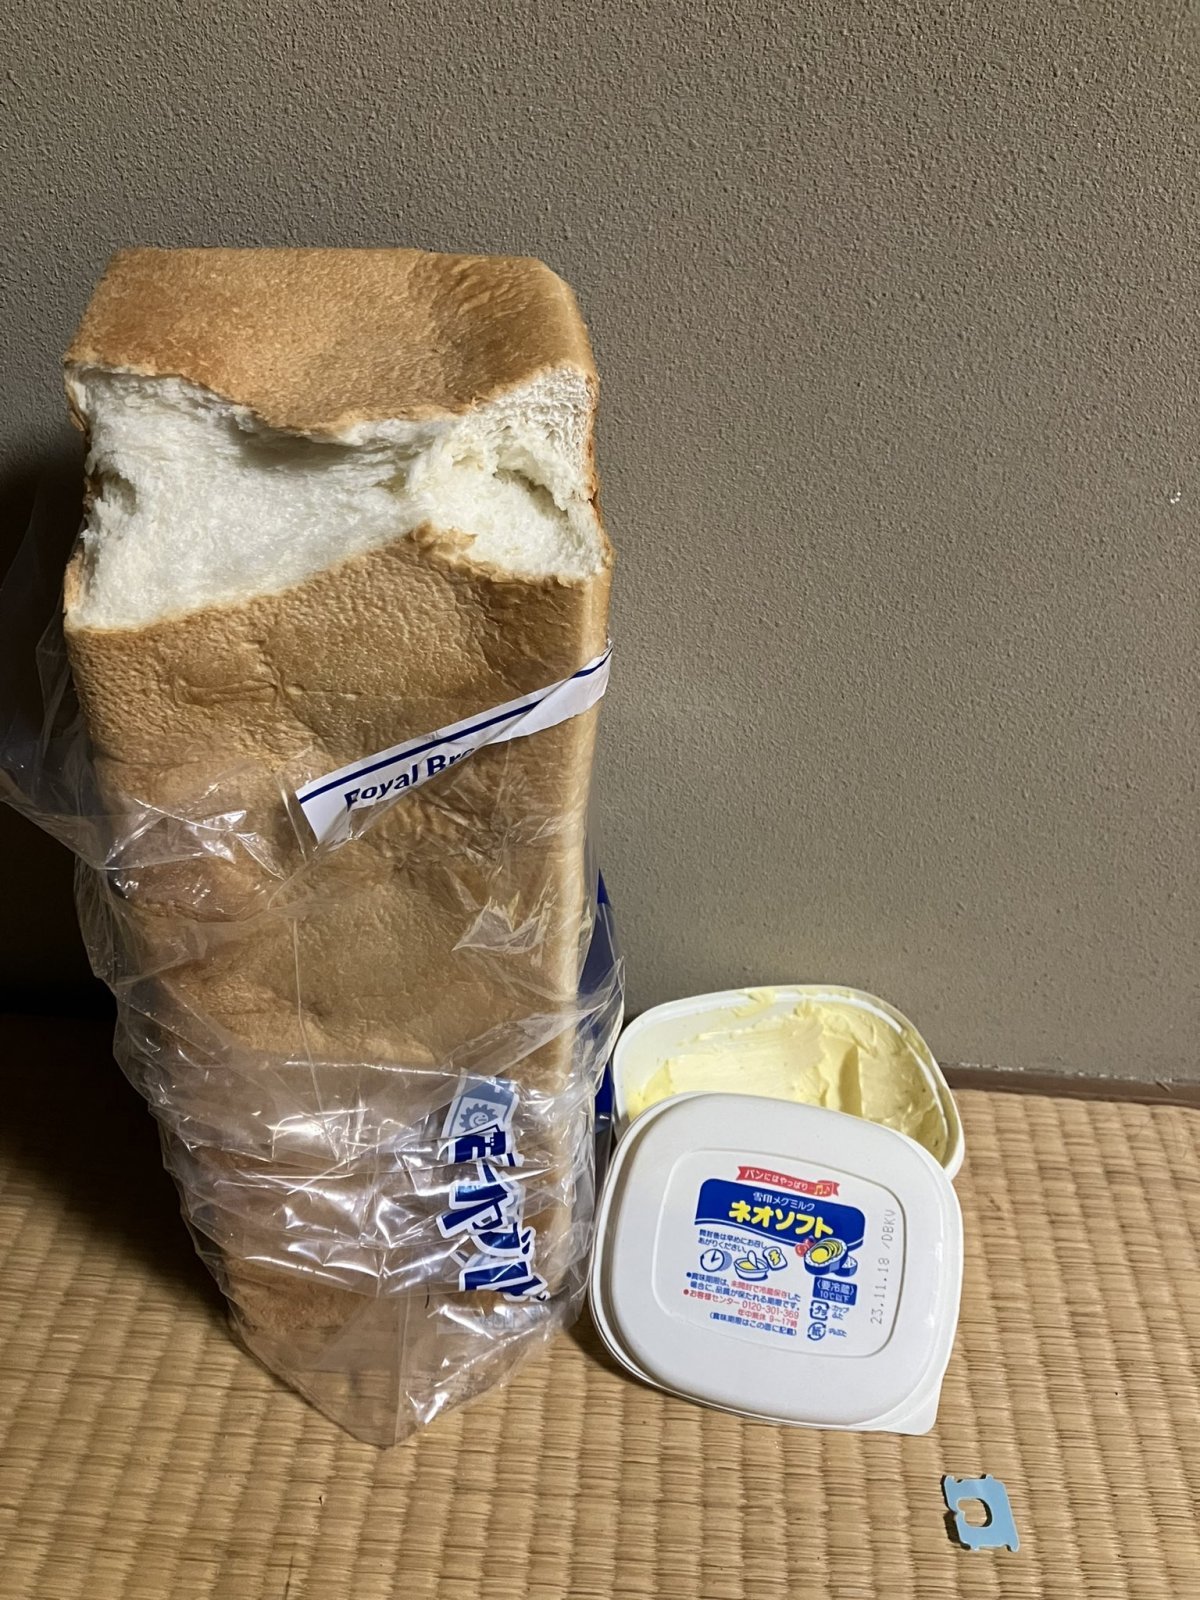 끼니를 식빵과 버터로 떼우는 일본 남성 ‘절대퇴사맨’의 밥상. @MaqwgNaJKDOnxGb 트위터 캡처